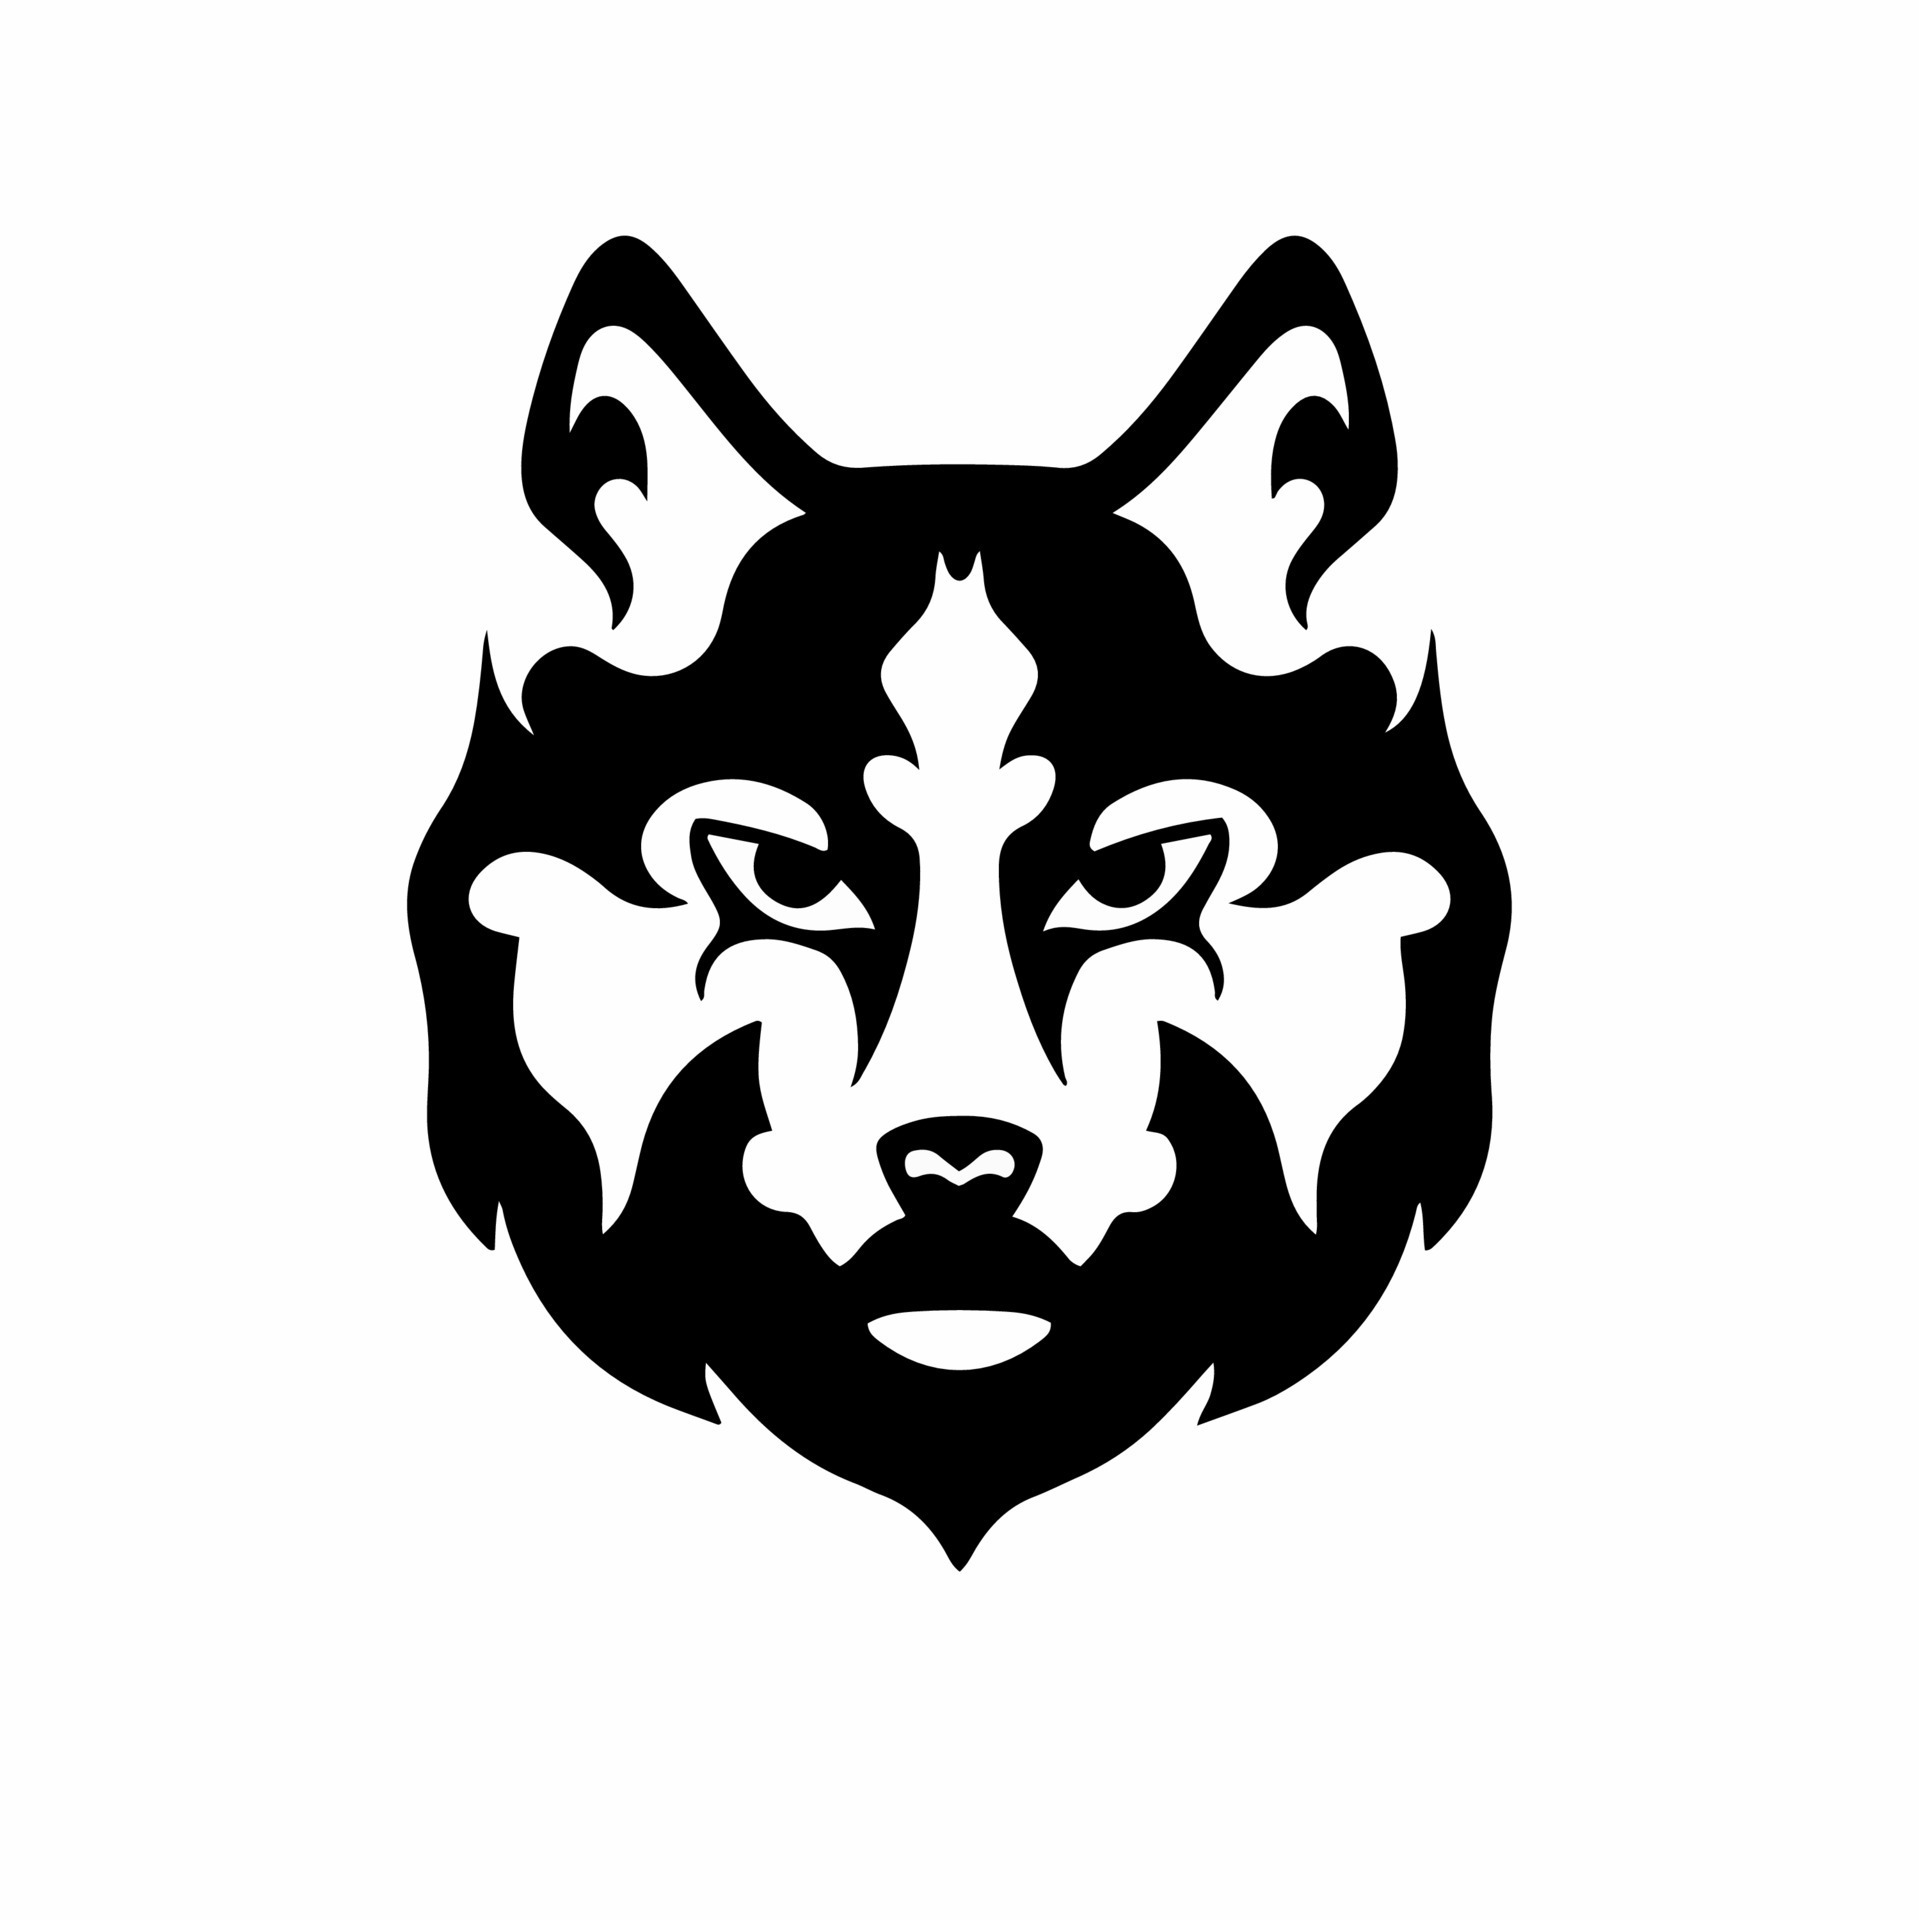 Tribal Wolf Head Logo. Tattoo Design. Animal Stencil Vector Illustration  19015689 Vector Art at Vecteezy